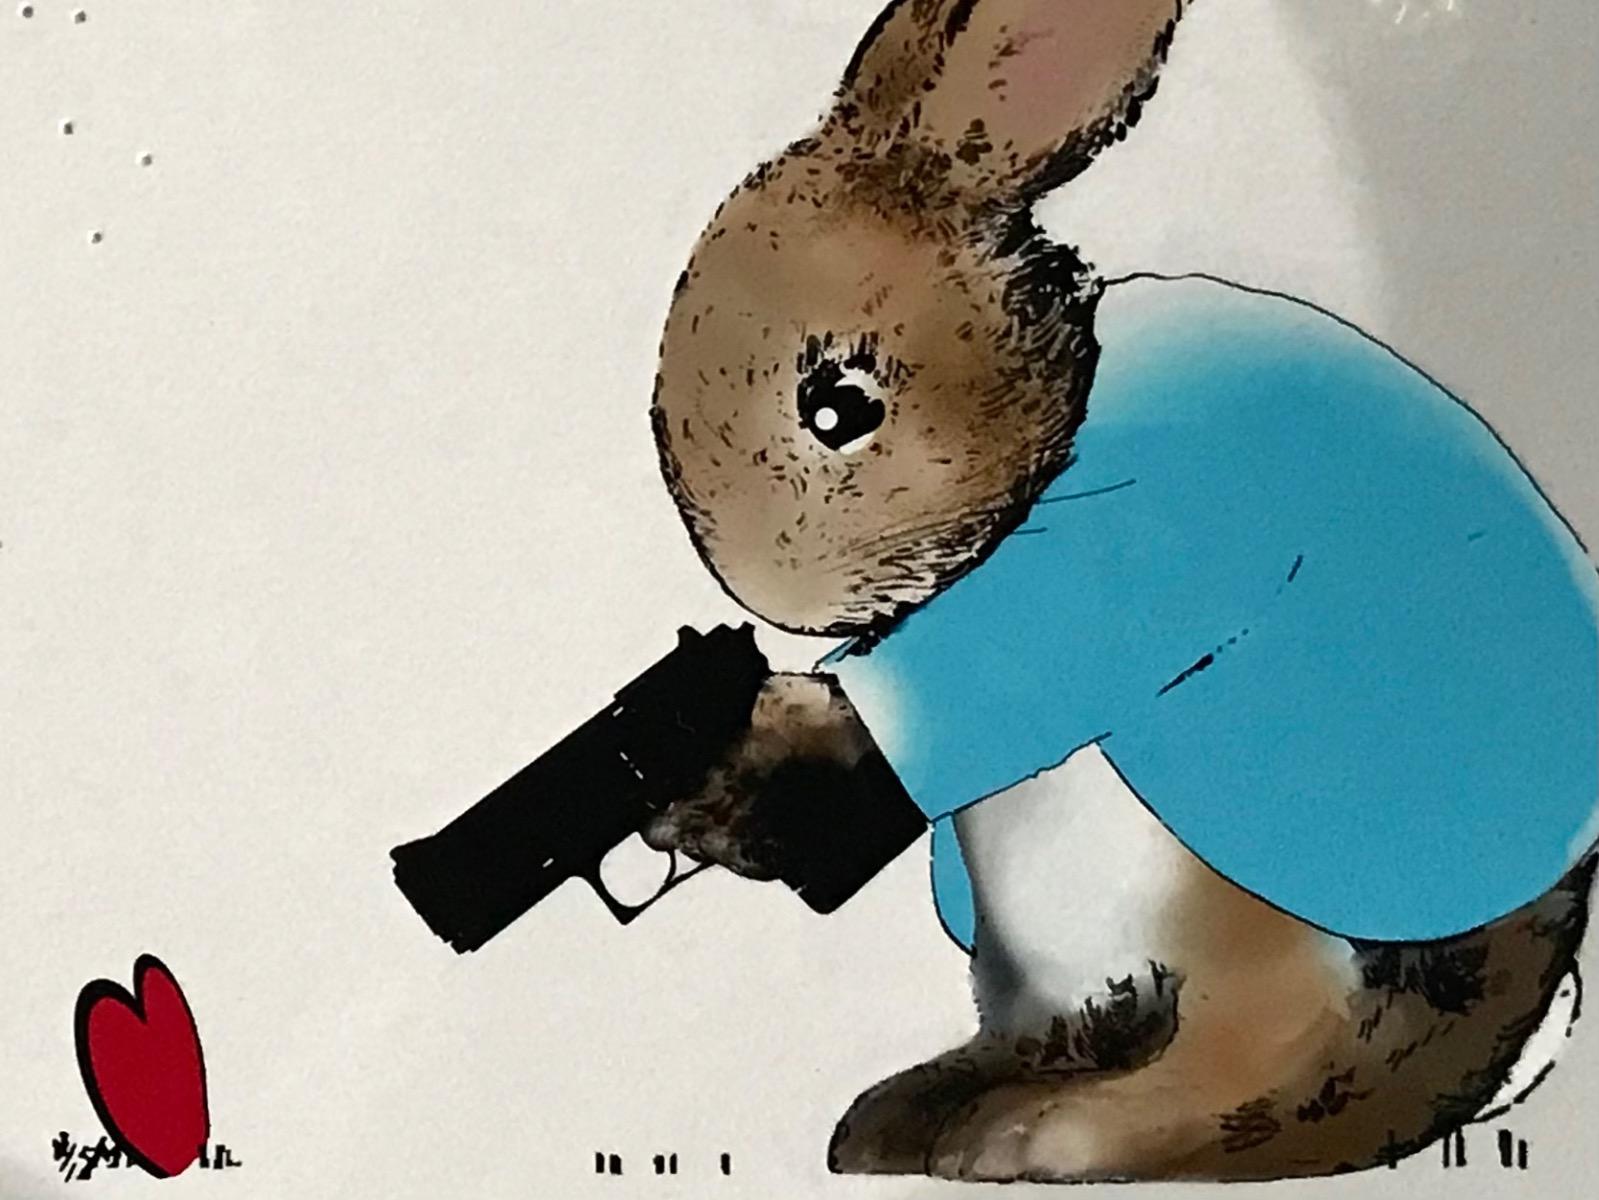 La série Résistance rurale - Freeze ! de Harry Bunce se compose de tons bleus, rouges et bruns qui montrent un lapin tenant un pistolet pointé sur un cœur rouge, avec en arrière-plan les coups de feu dans le drap.

Informations complémentaires